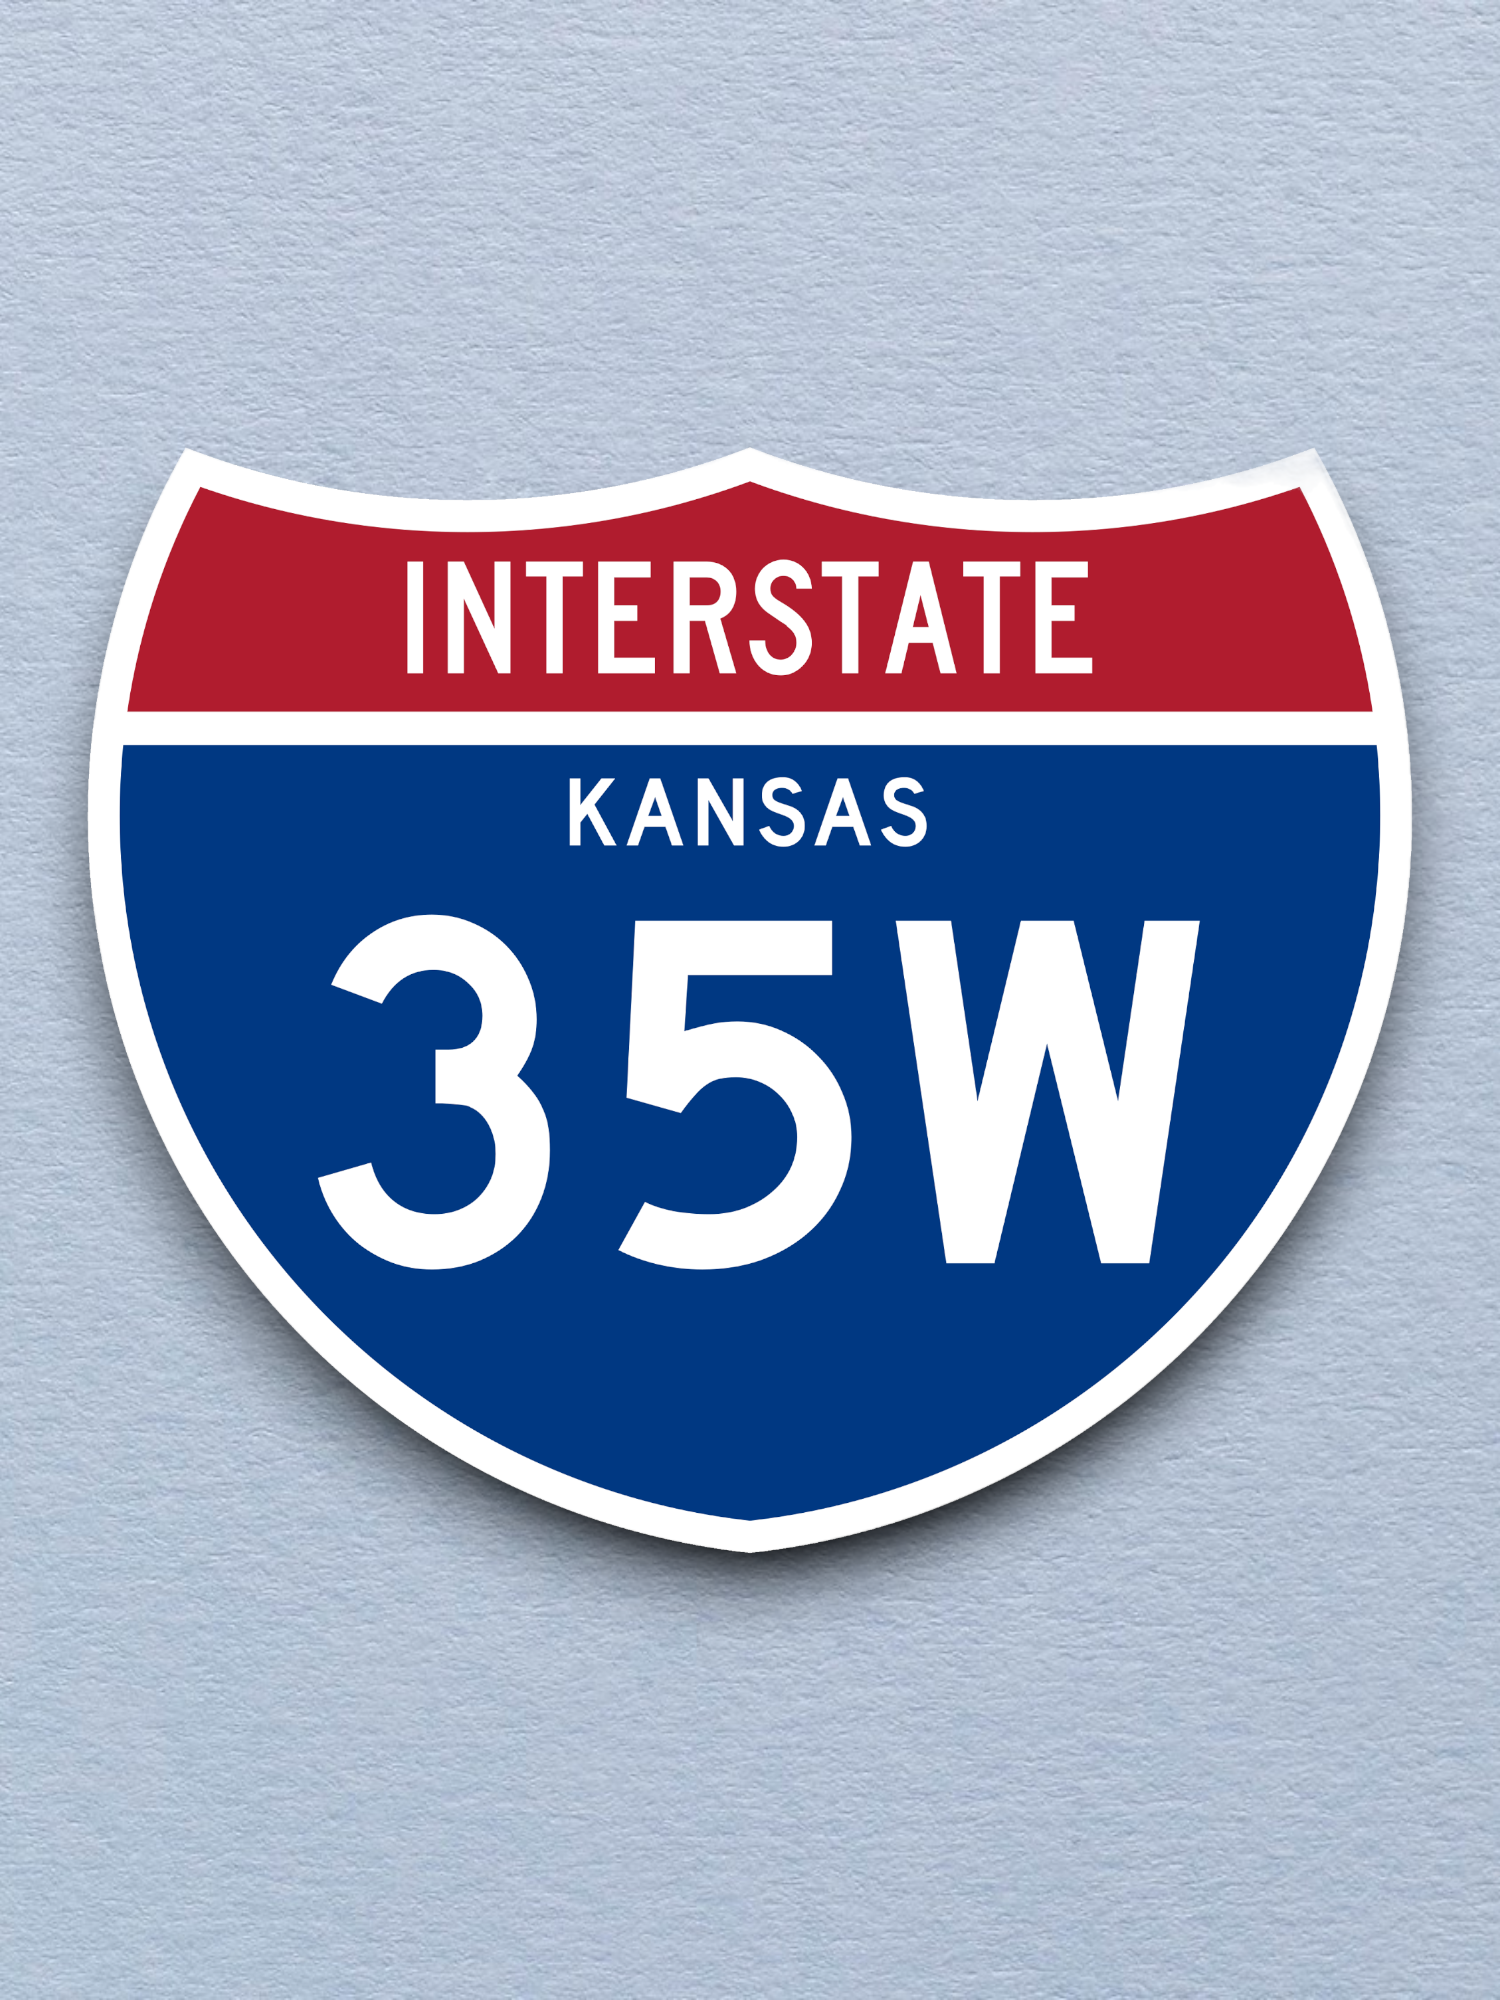 Interstate I-35W Kansas - Road Sign Sticker